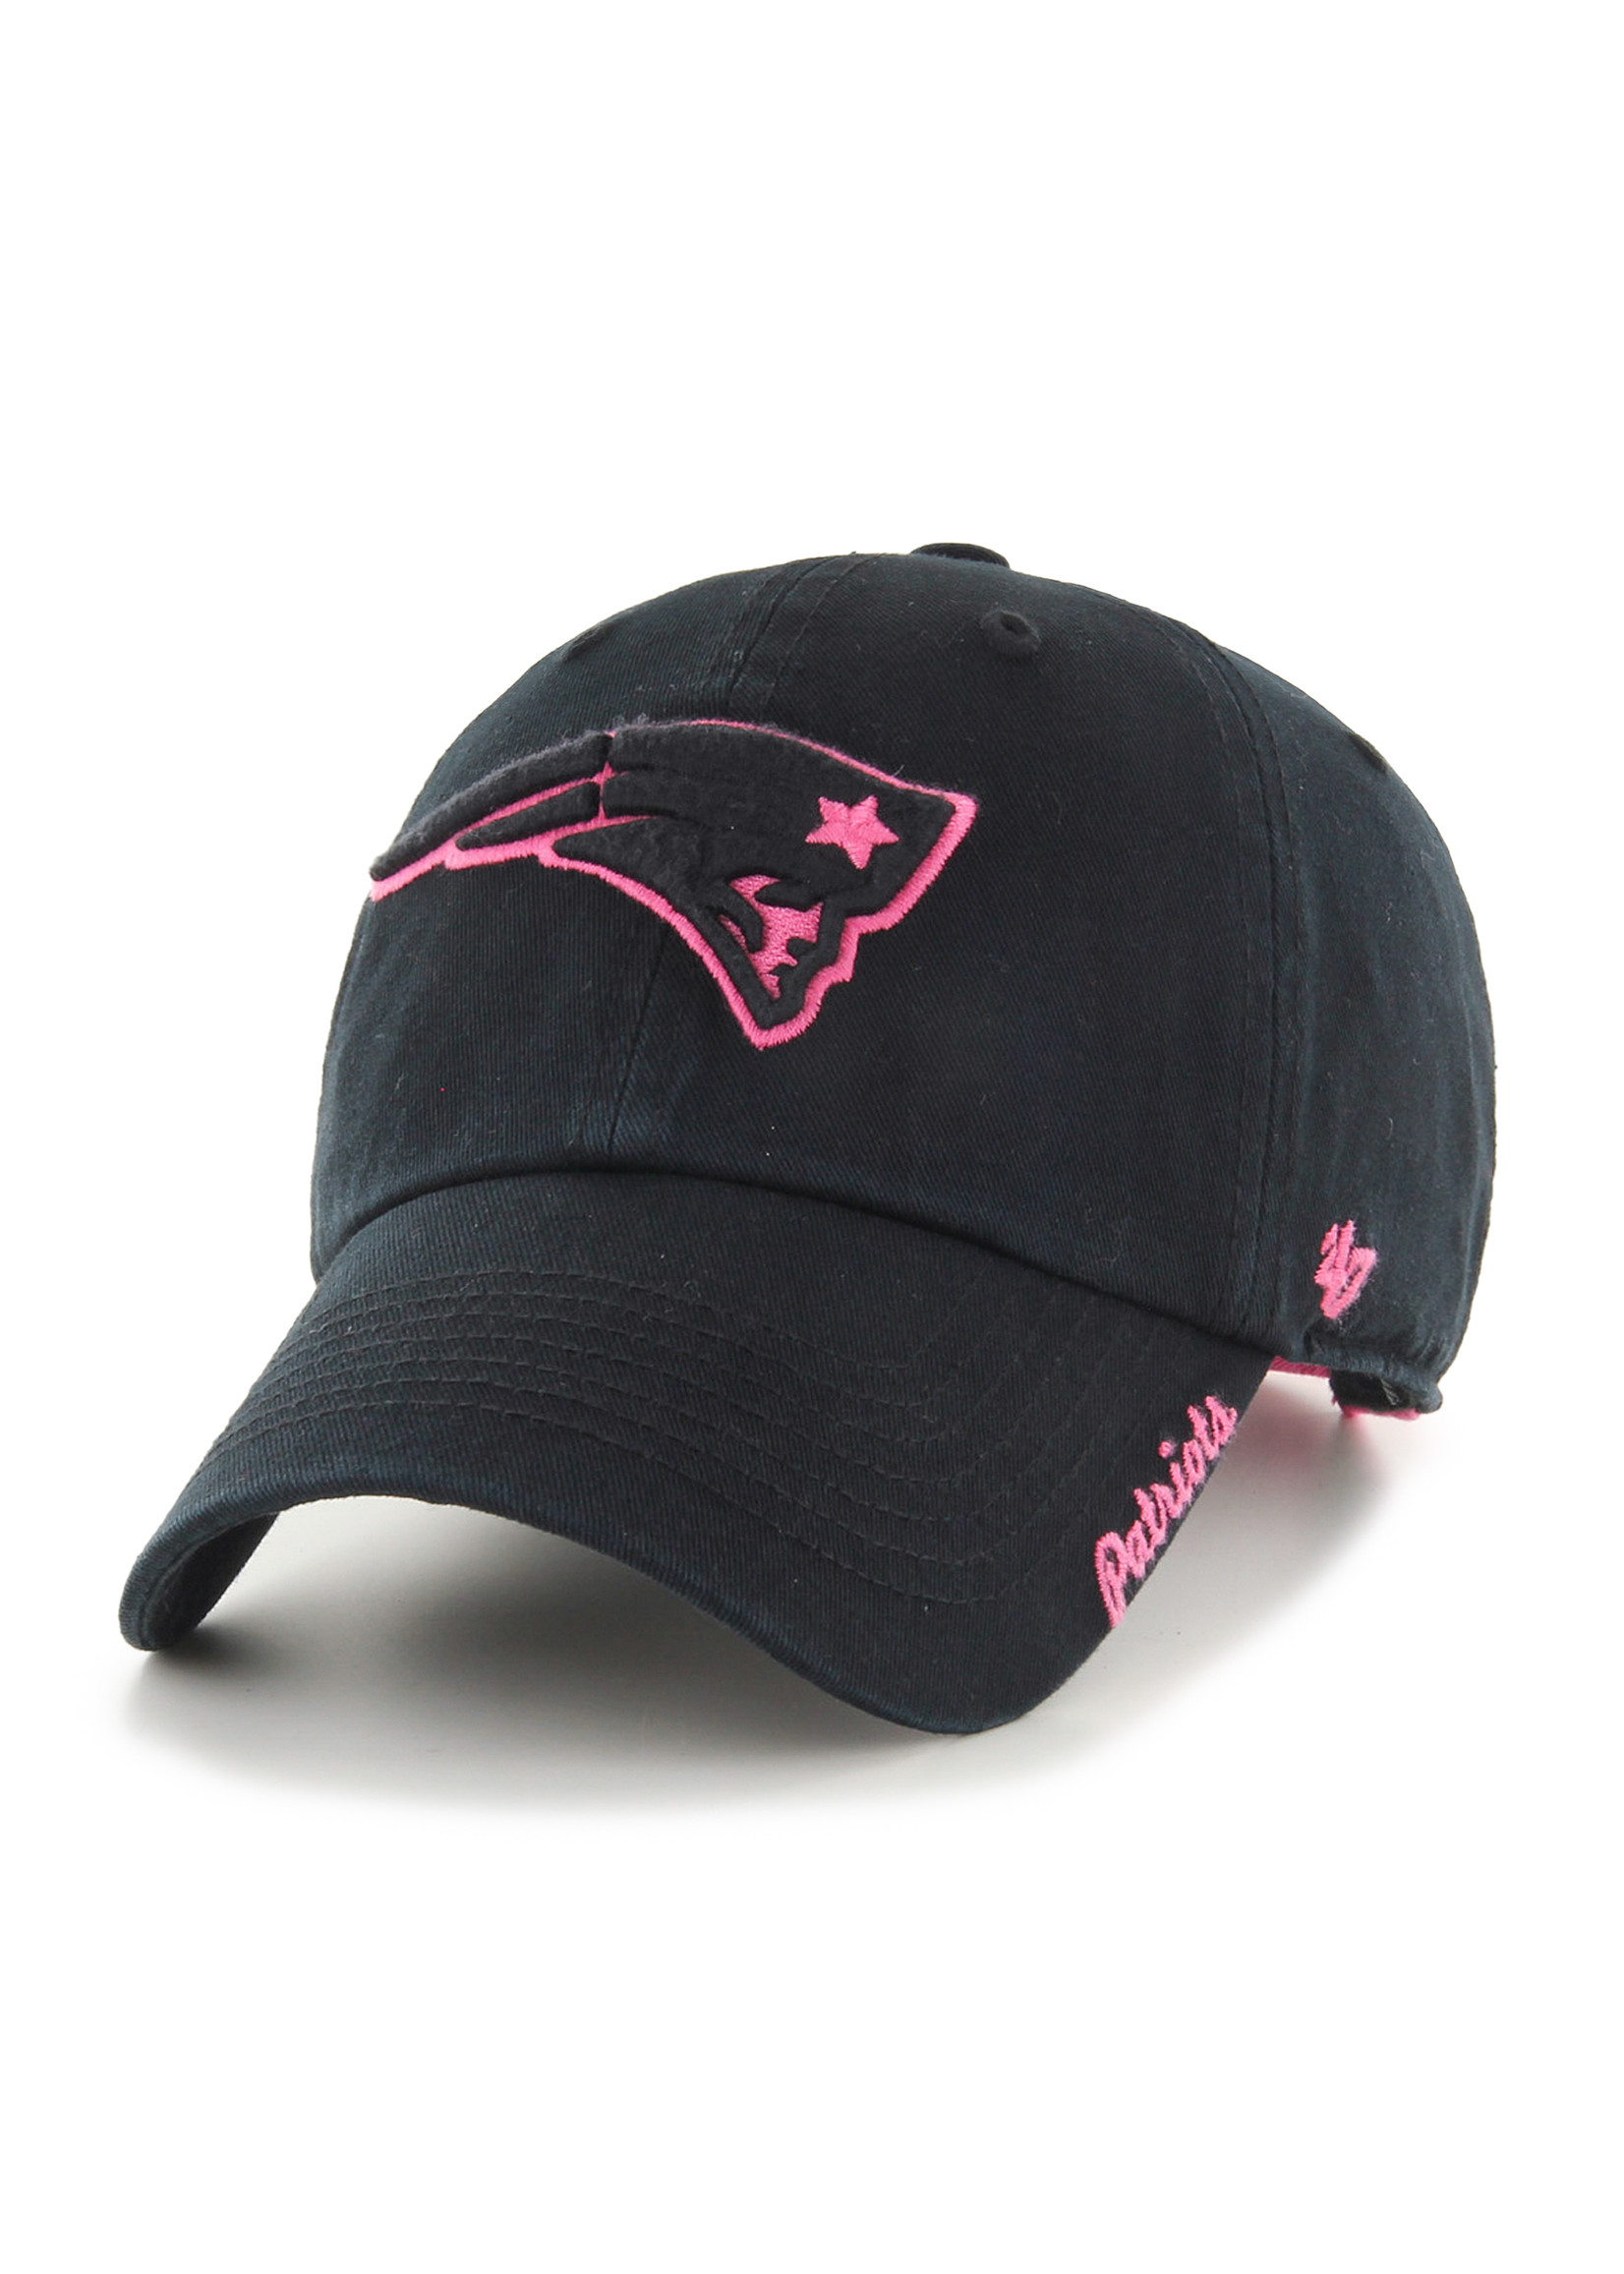 '47 Brand Patriots Black Hat - Pink Outline